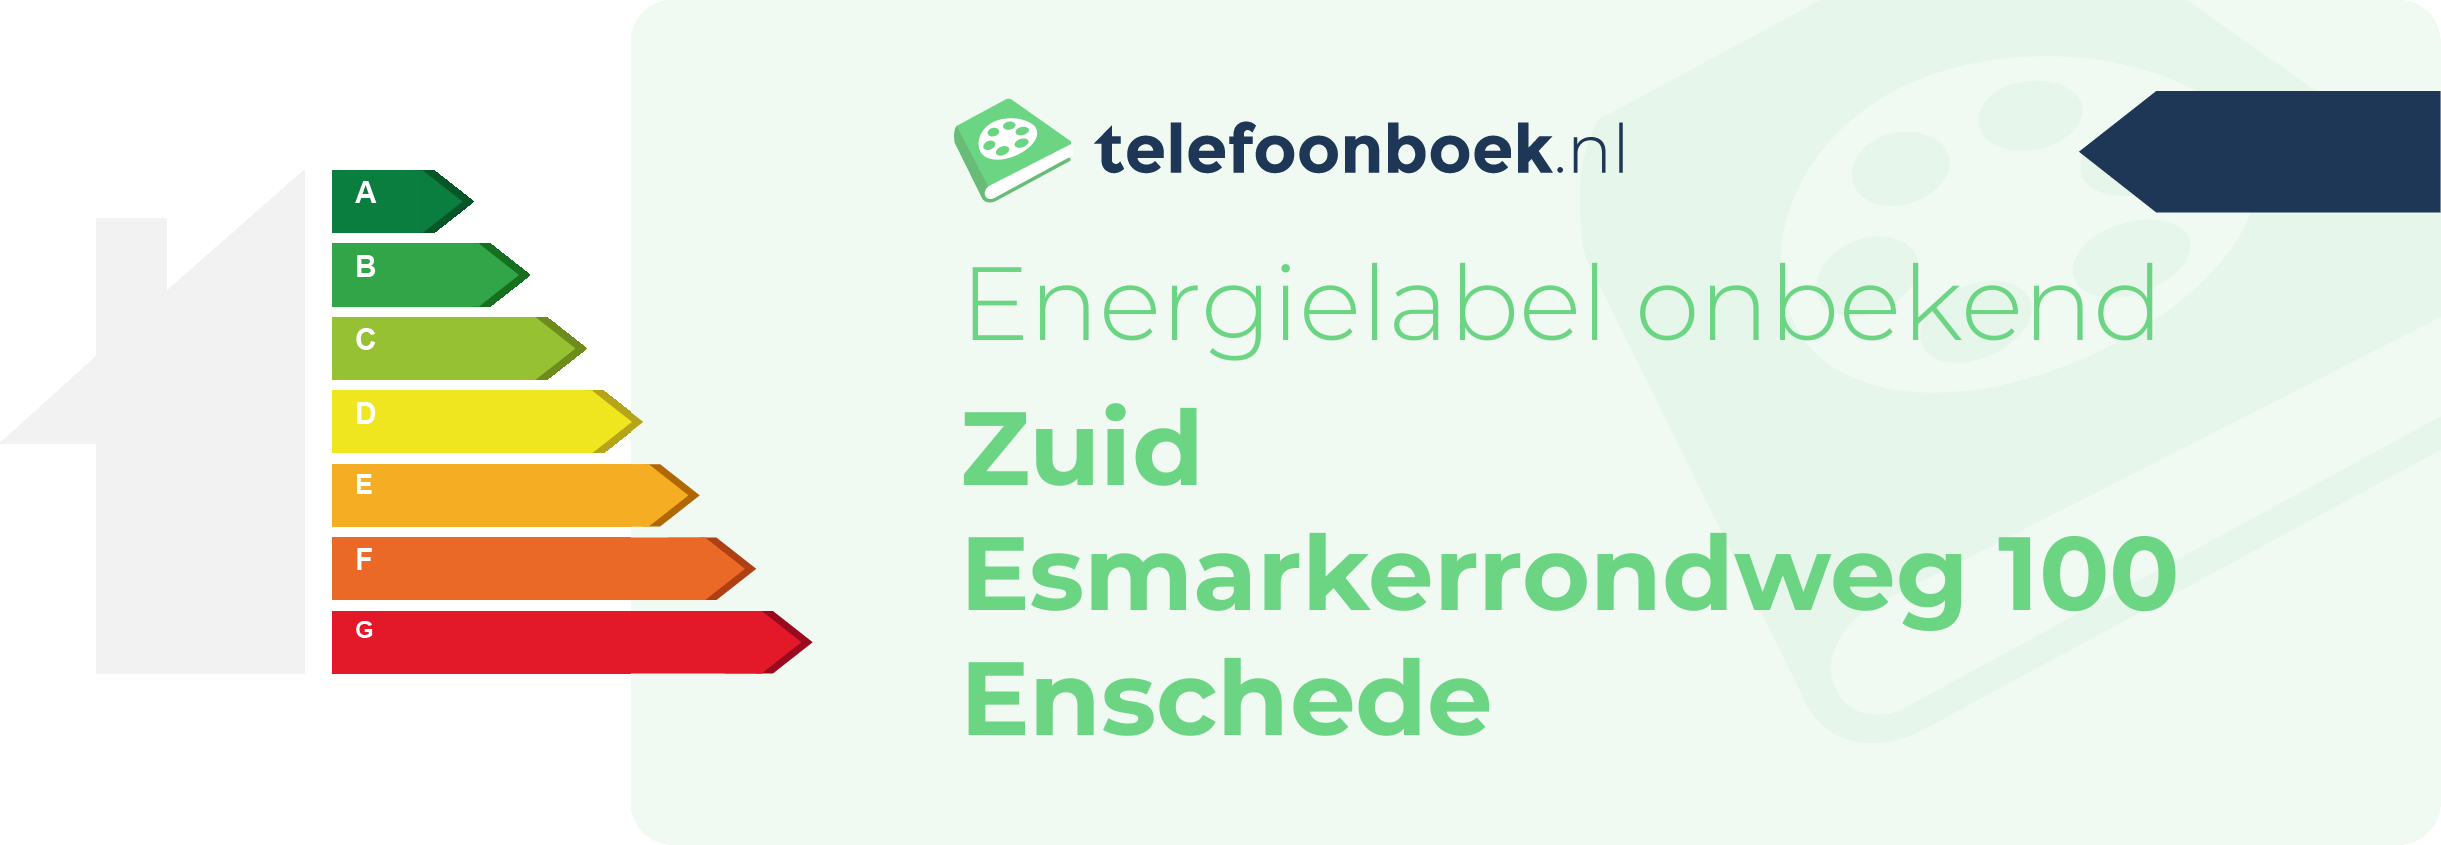 Energielabel Zuid Esmarkerrondweg 100 Enschede